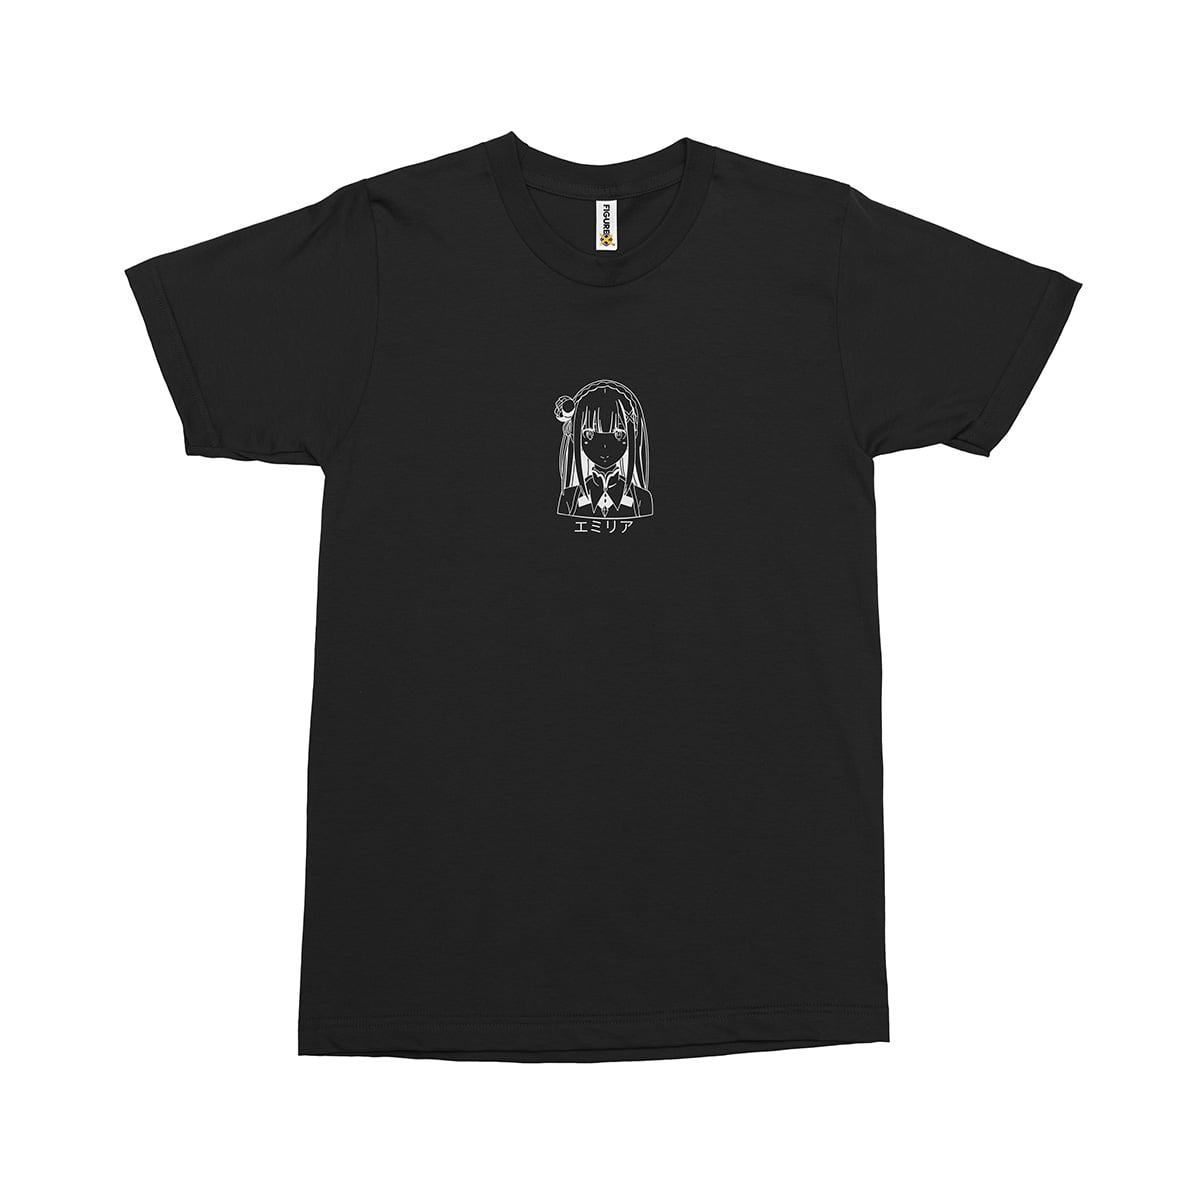 Rezero emilia beyaz fxsca2112c erkek tshirt siyah orta kucuk - re:zero emilia baskılı erkek t-shirt - figurex